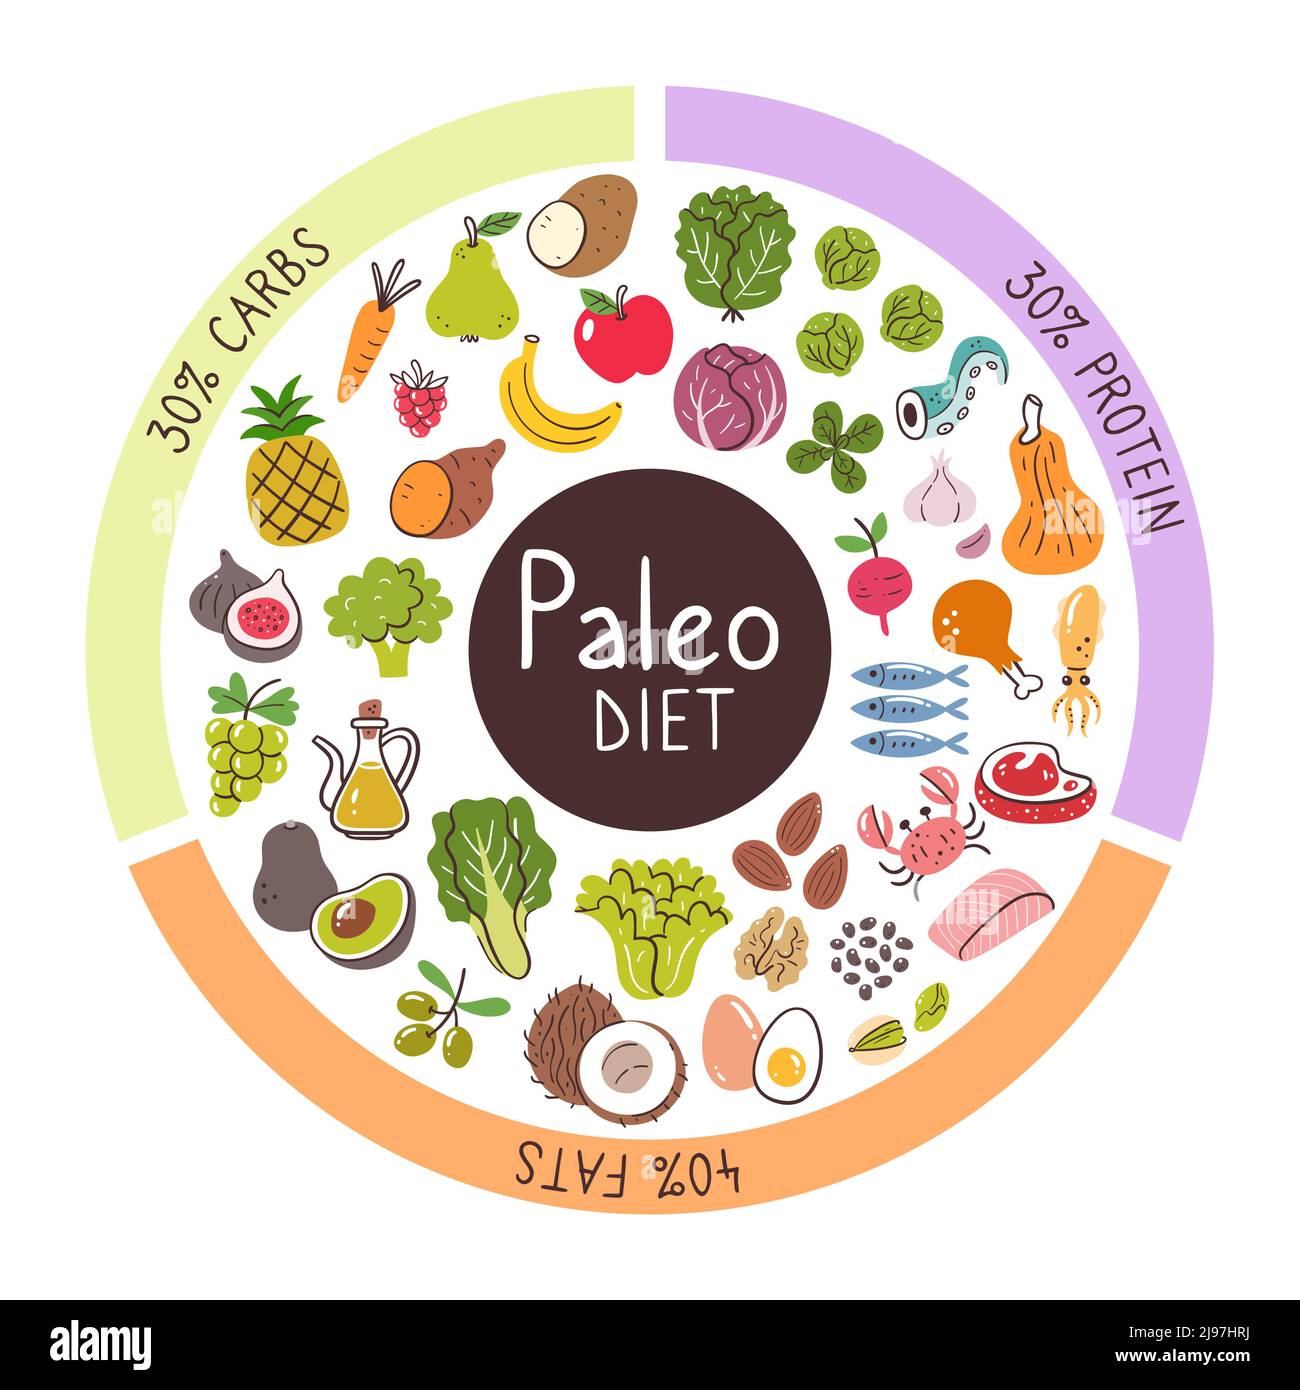 Ingrédients alimentaires Paleo Diet. Pourcentages de glucides, protéines et graisses les plus utilisés dans ce régime alimentaire. Collection Food Icon. Illustration de Vecteur